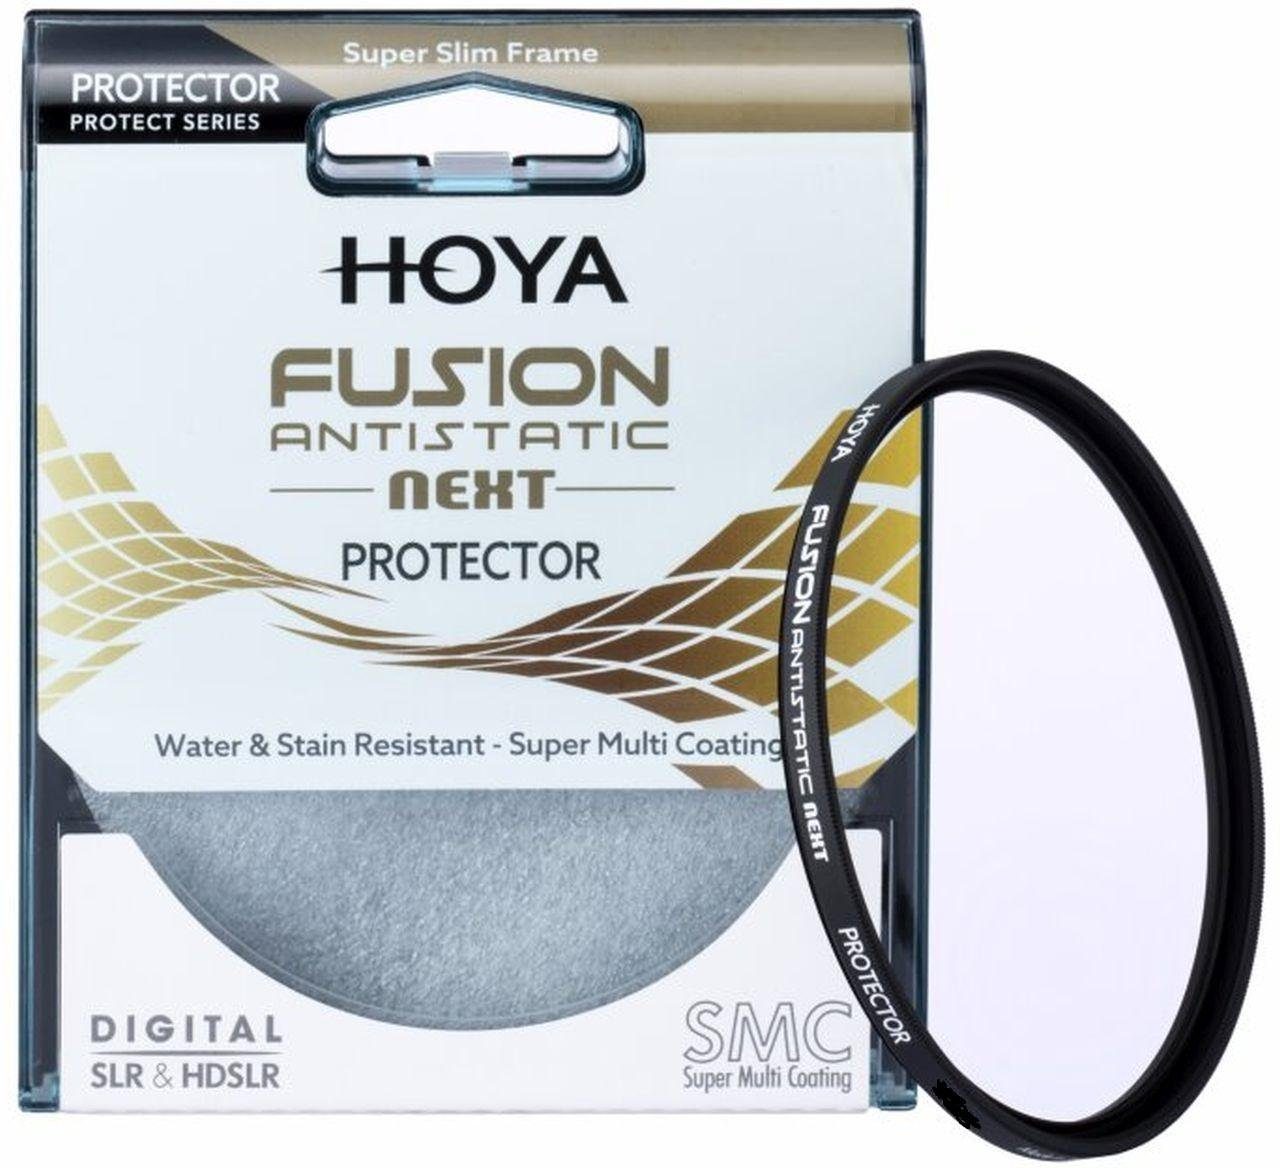 82mm Protector Hoya Fusion Antistatic Next Objektivzubehör